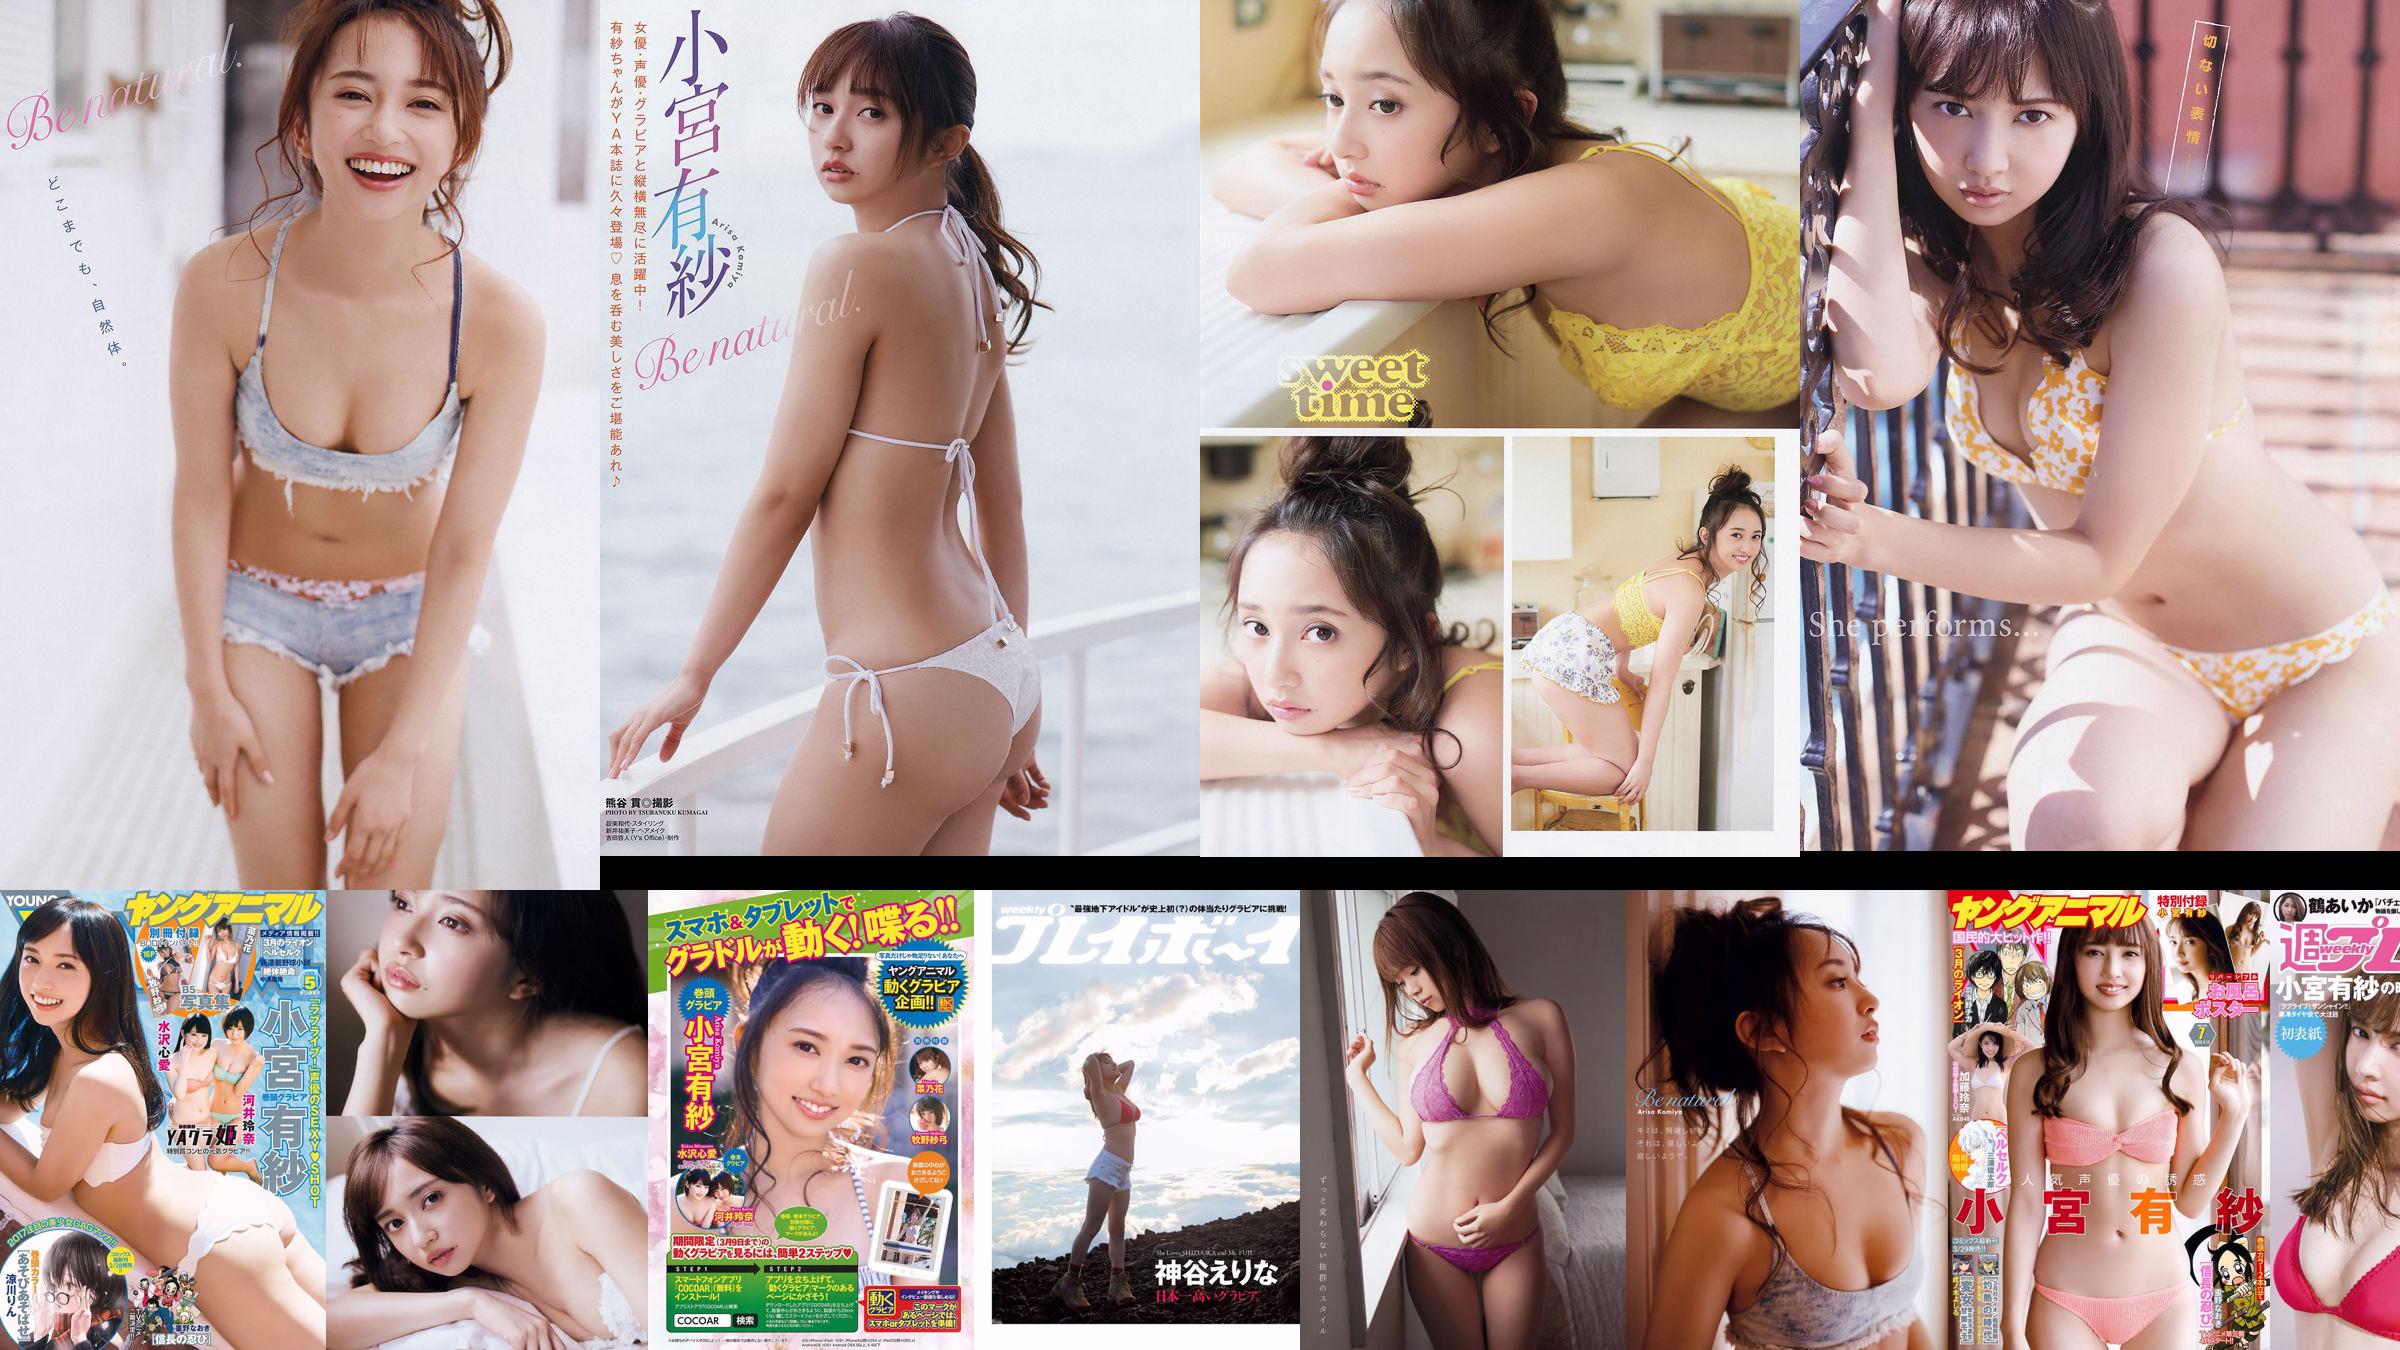 Arisa Komiya Yuna Sekine [Jungtier] 2018 No.20 Photo Magazine No.870f53 Seite 1